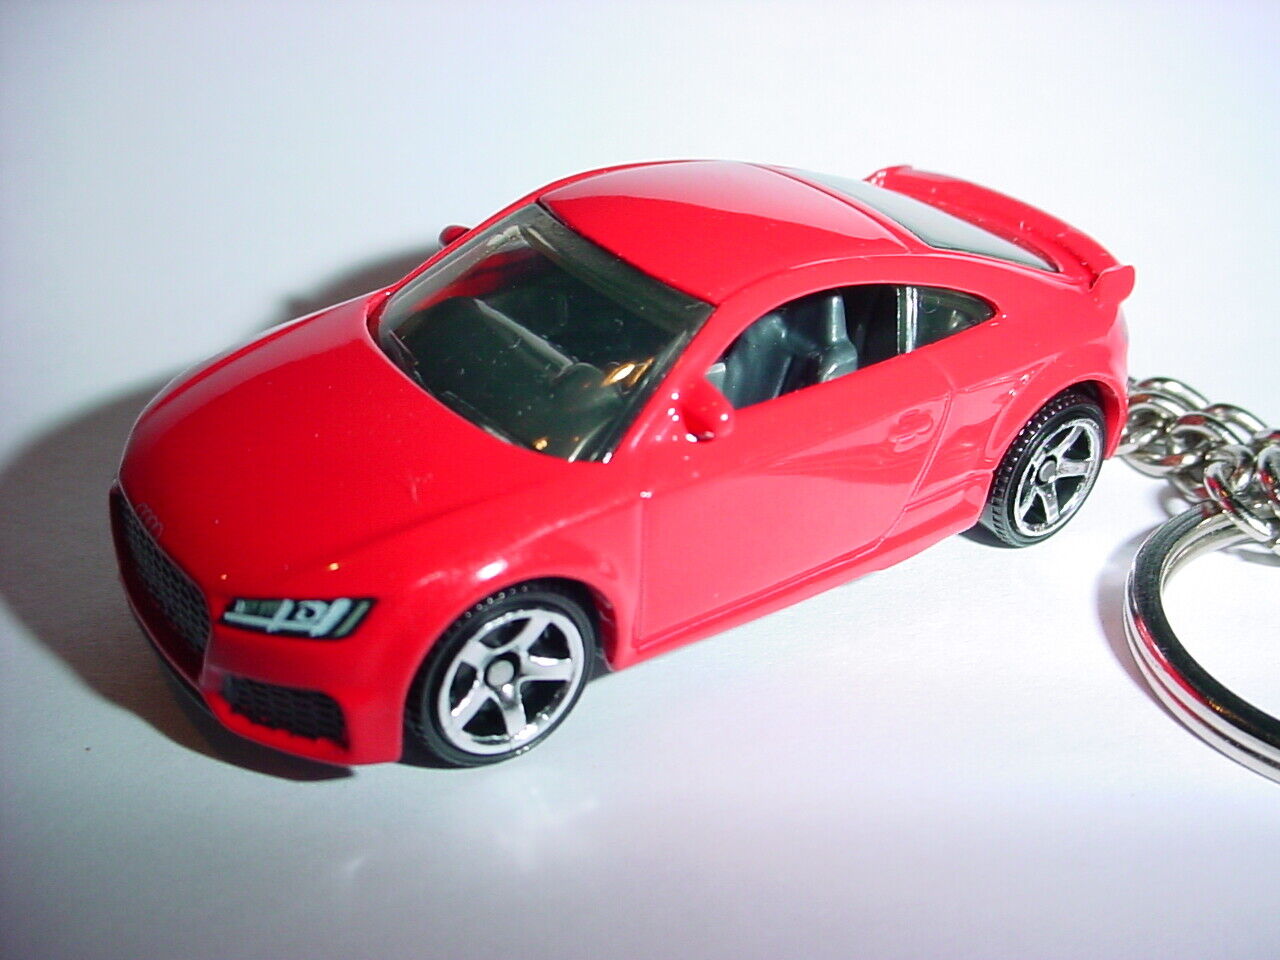 HOT 3D RED AUDI TT RS COUPE CUSTOM KEYCHAIN keyring key R-S BLING matchbox